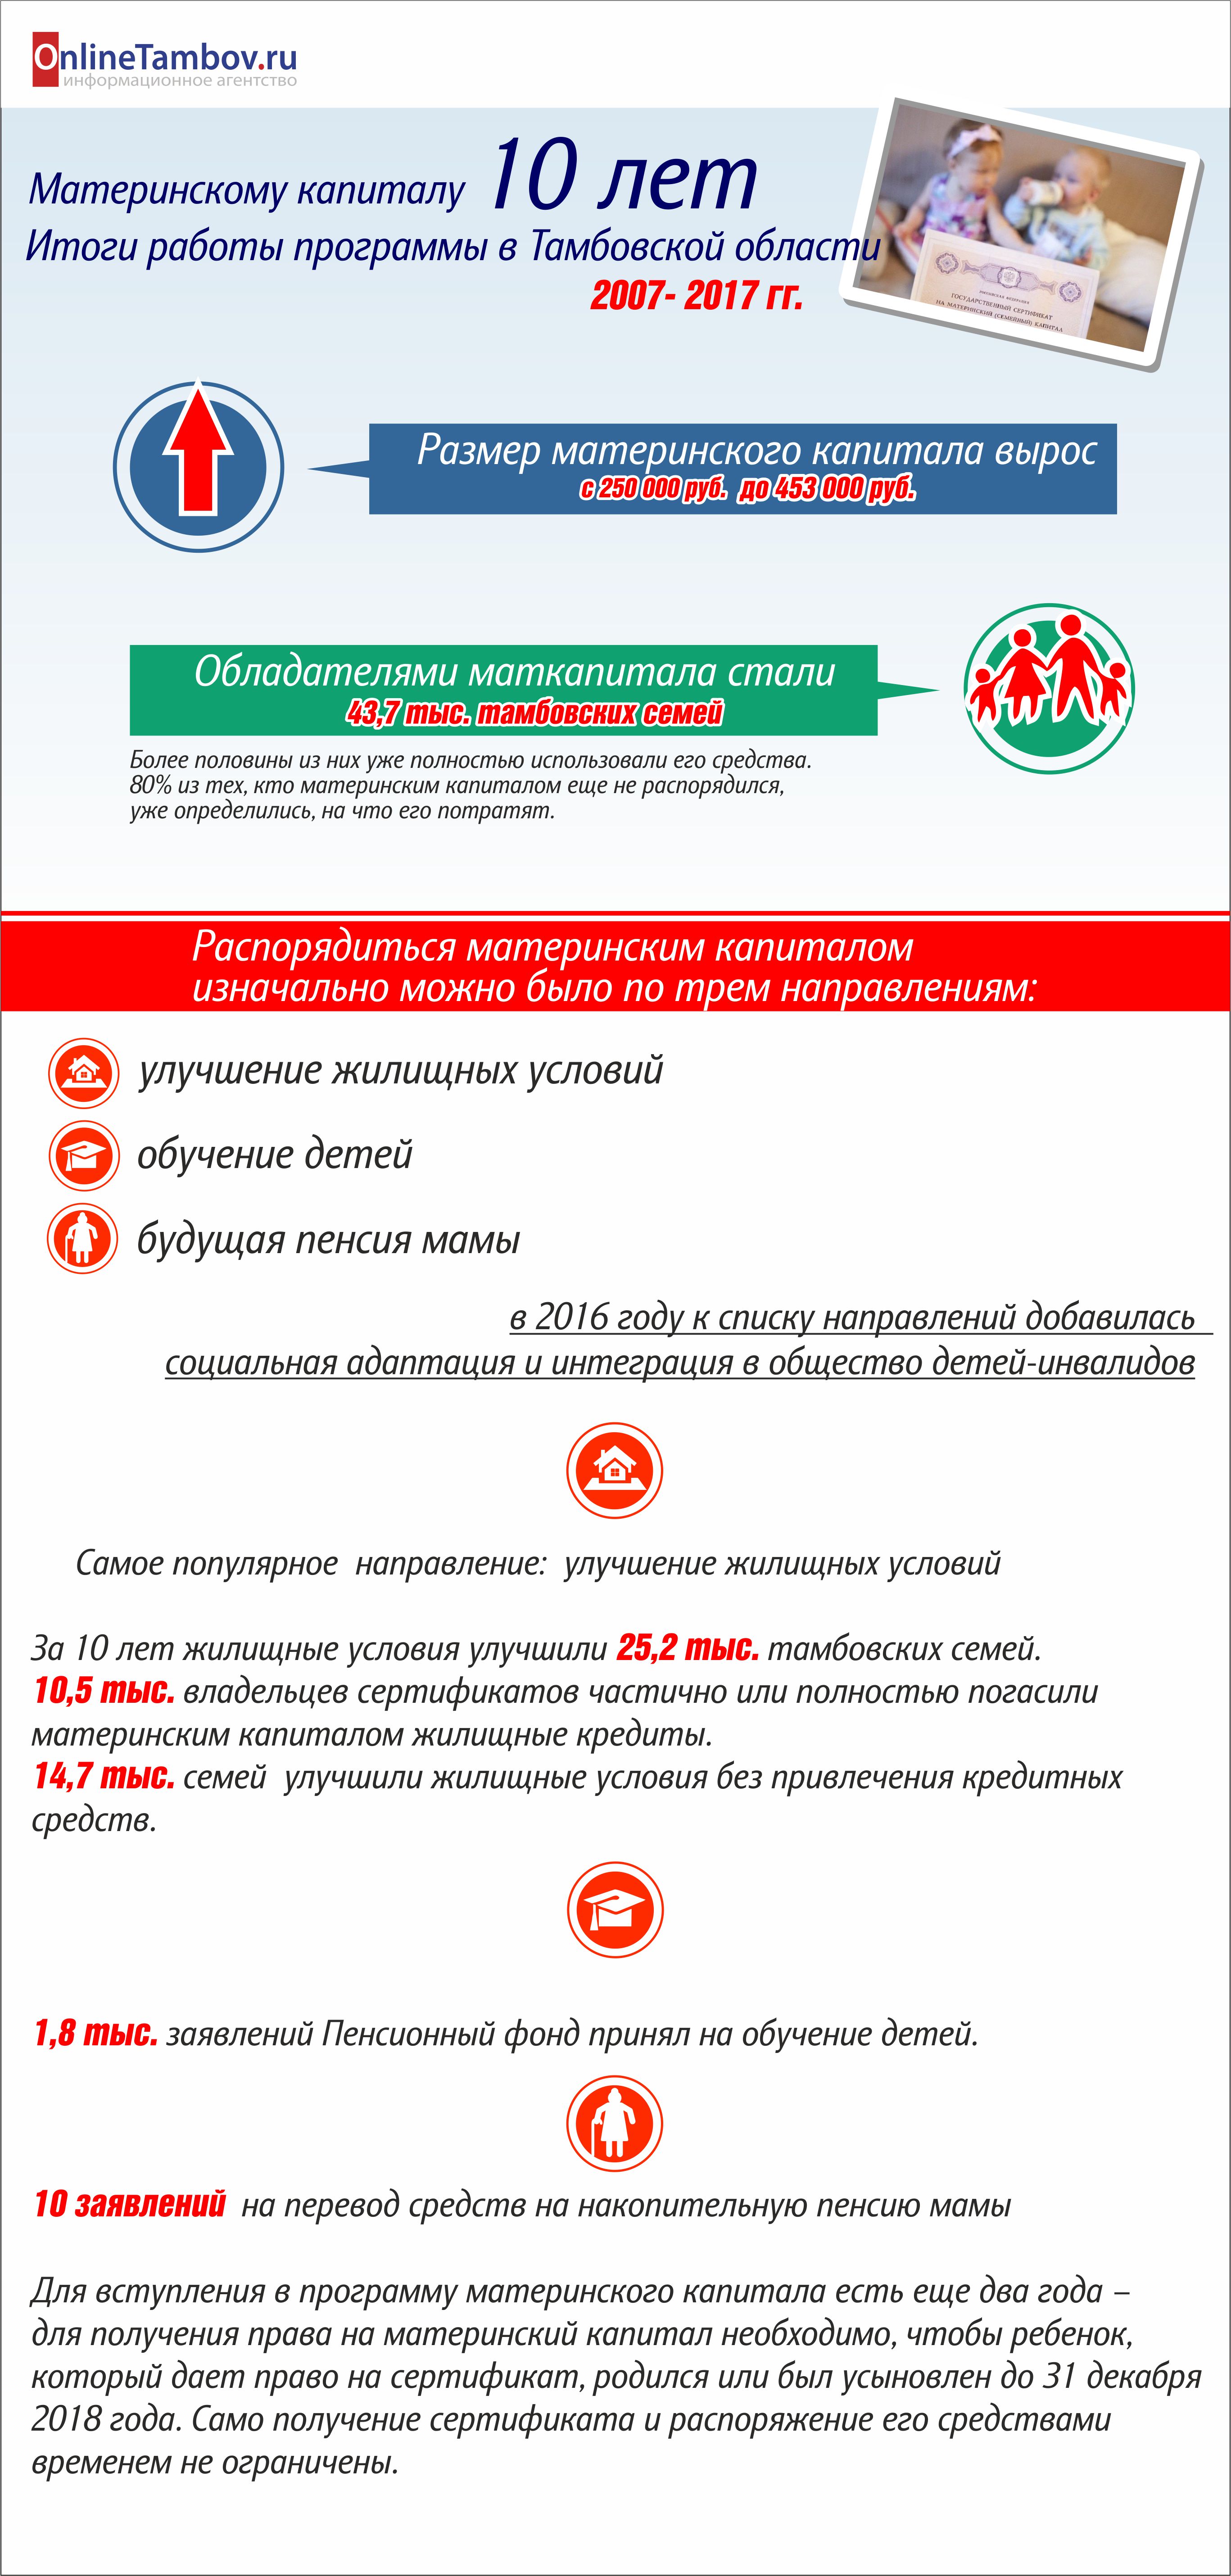 Итоги программы "Материнский капитал" в Тамбовской области за 10 лет